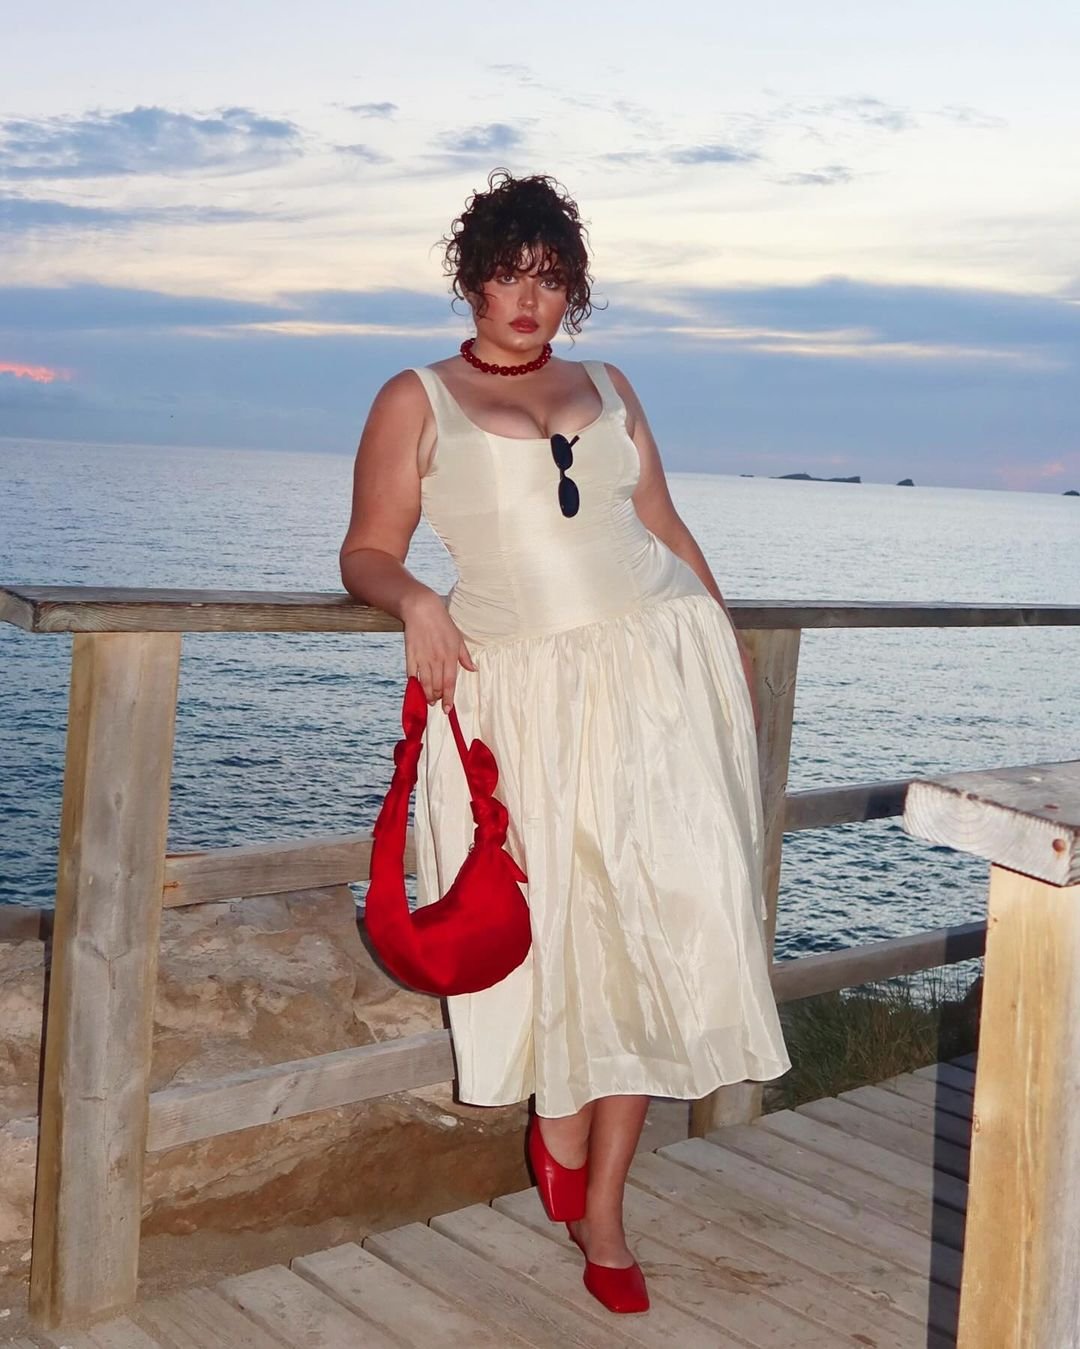 francesca perks - vestido-branco-bolsa-sapatilha-vermelha-óculos-colar - sapatilha vermelha - primavera - Ibiza - https://stealthelook.com.br